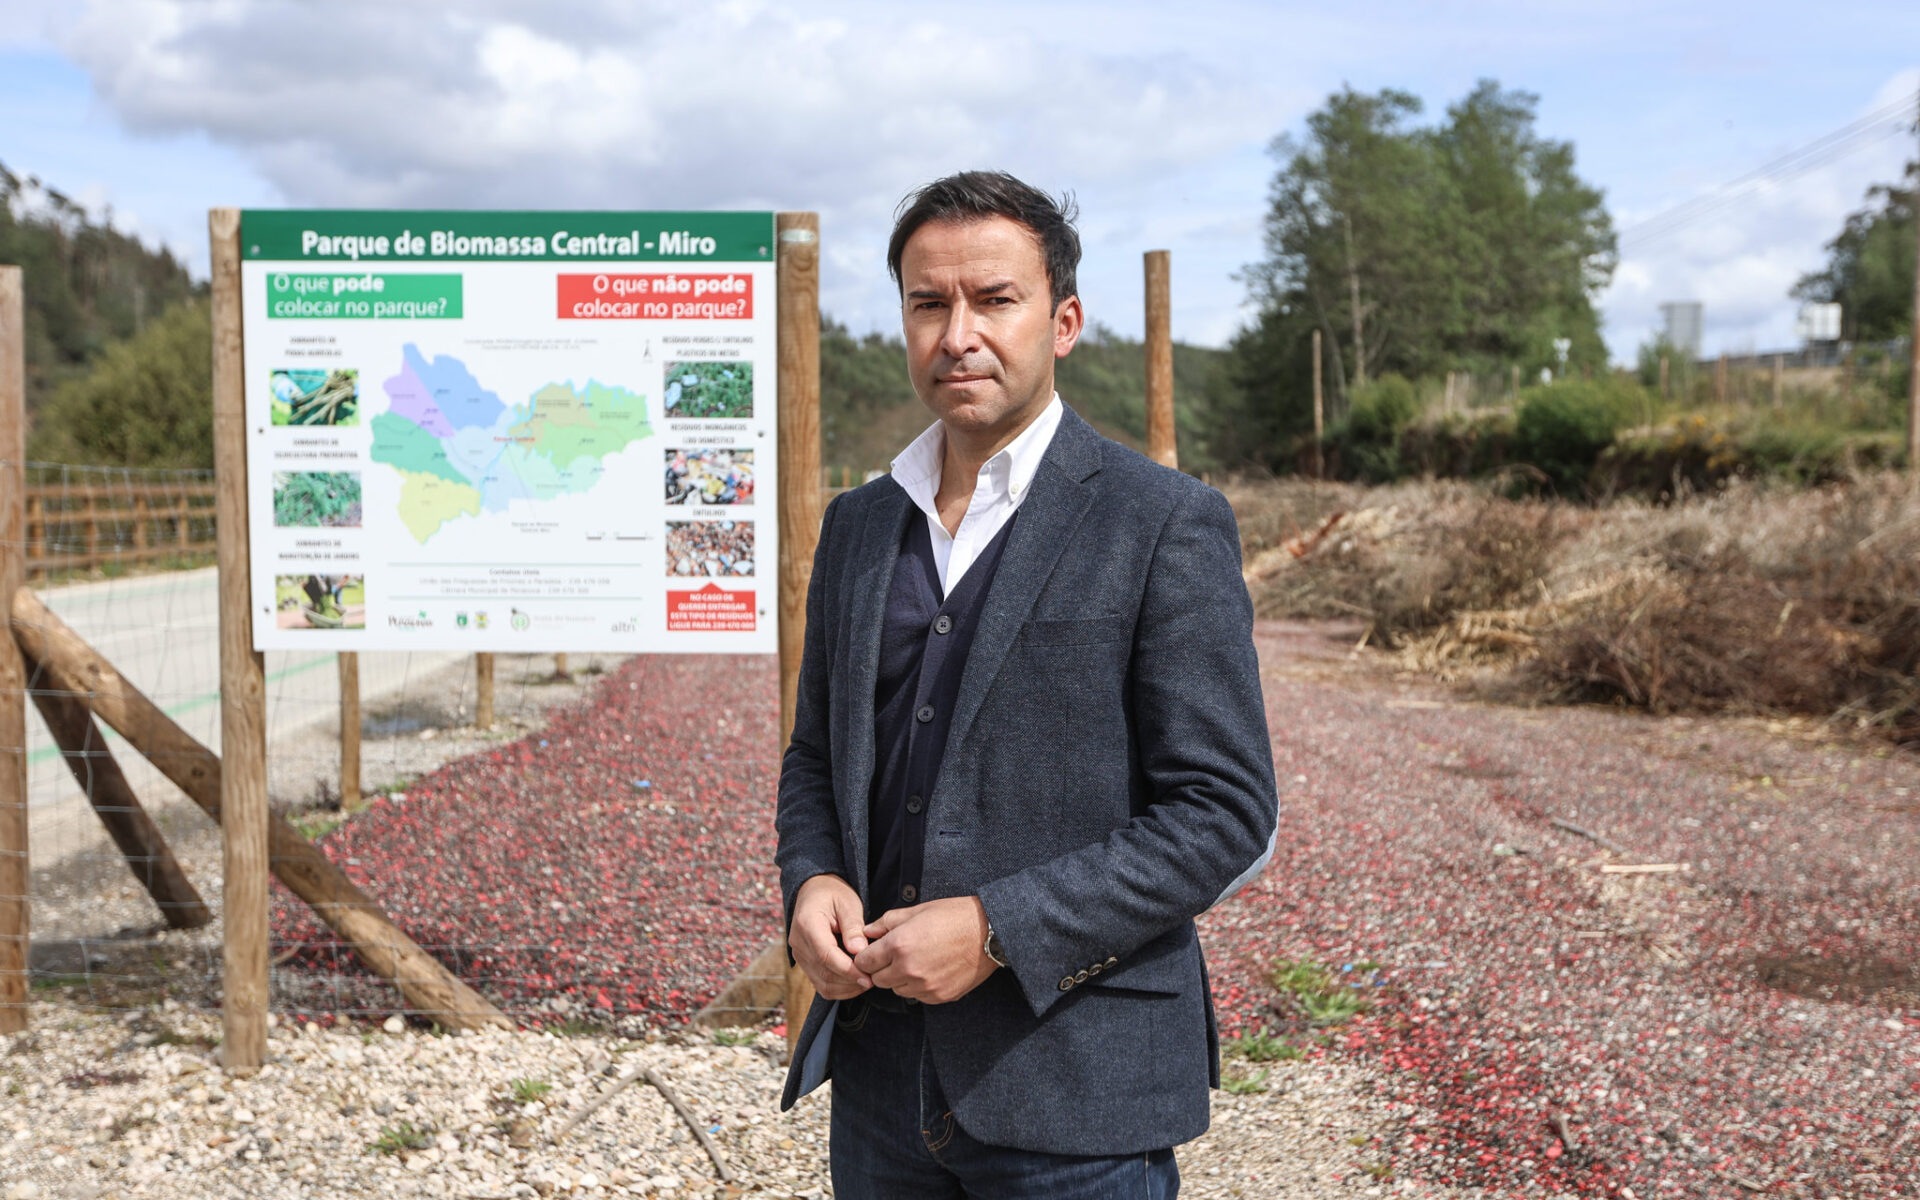 Álvaro Coimbra, Presidente da Câmara Municipal de Penacova, num dos parques de recolha de biomassa do município